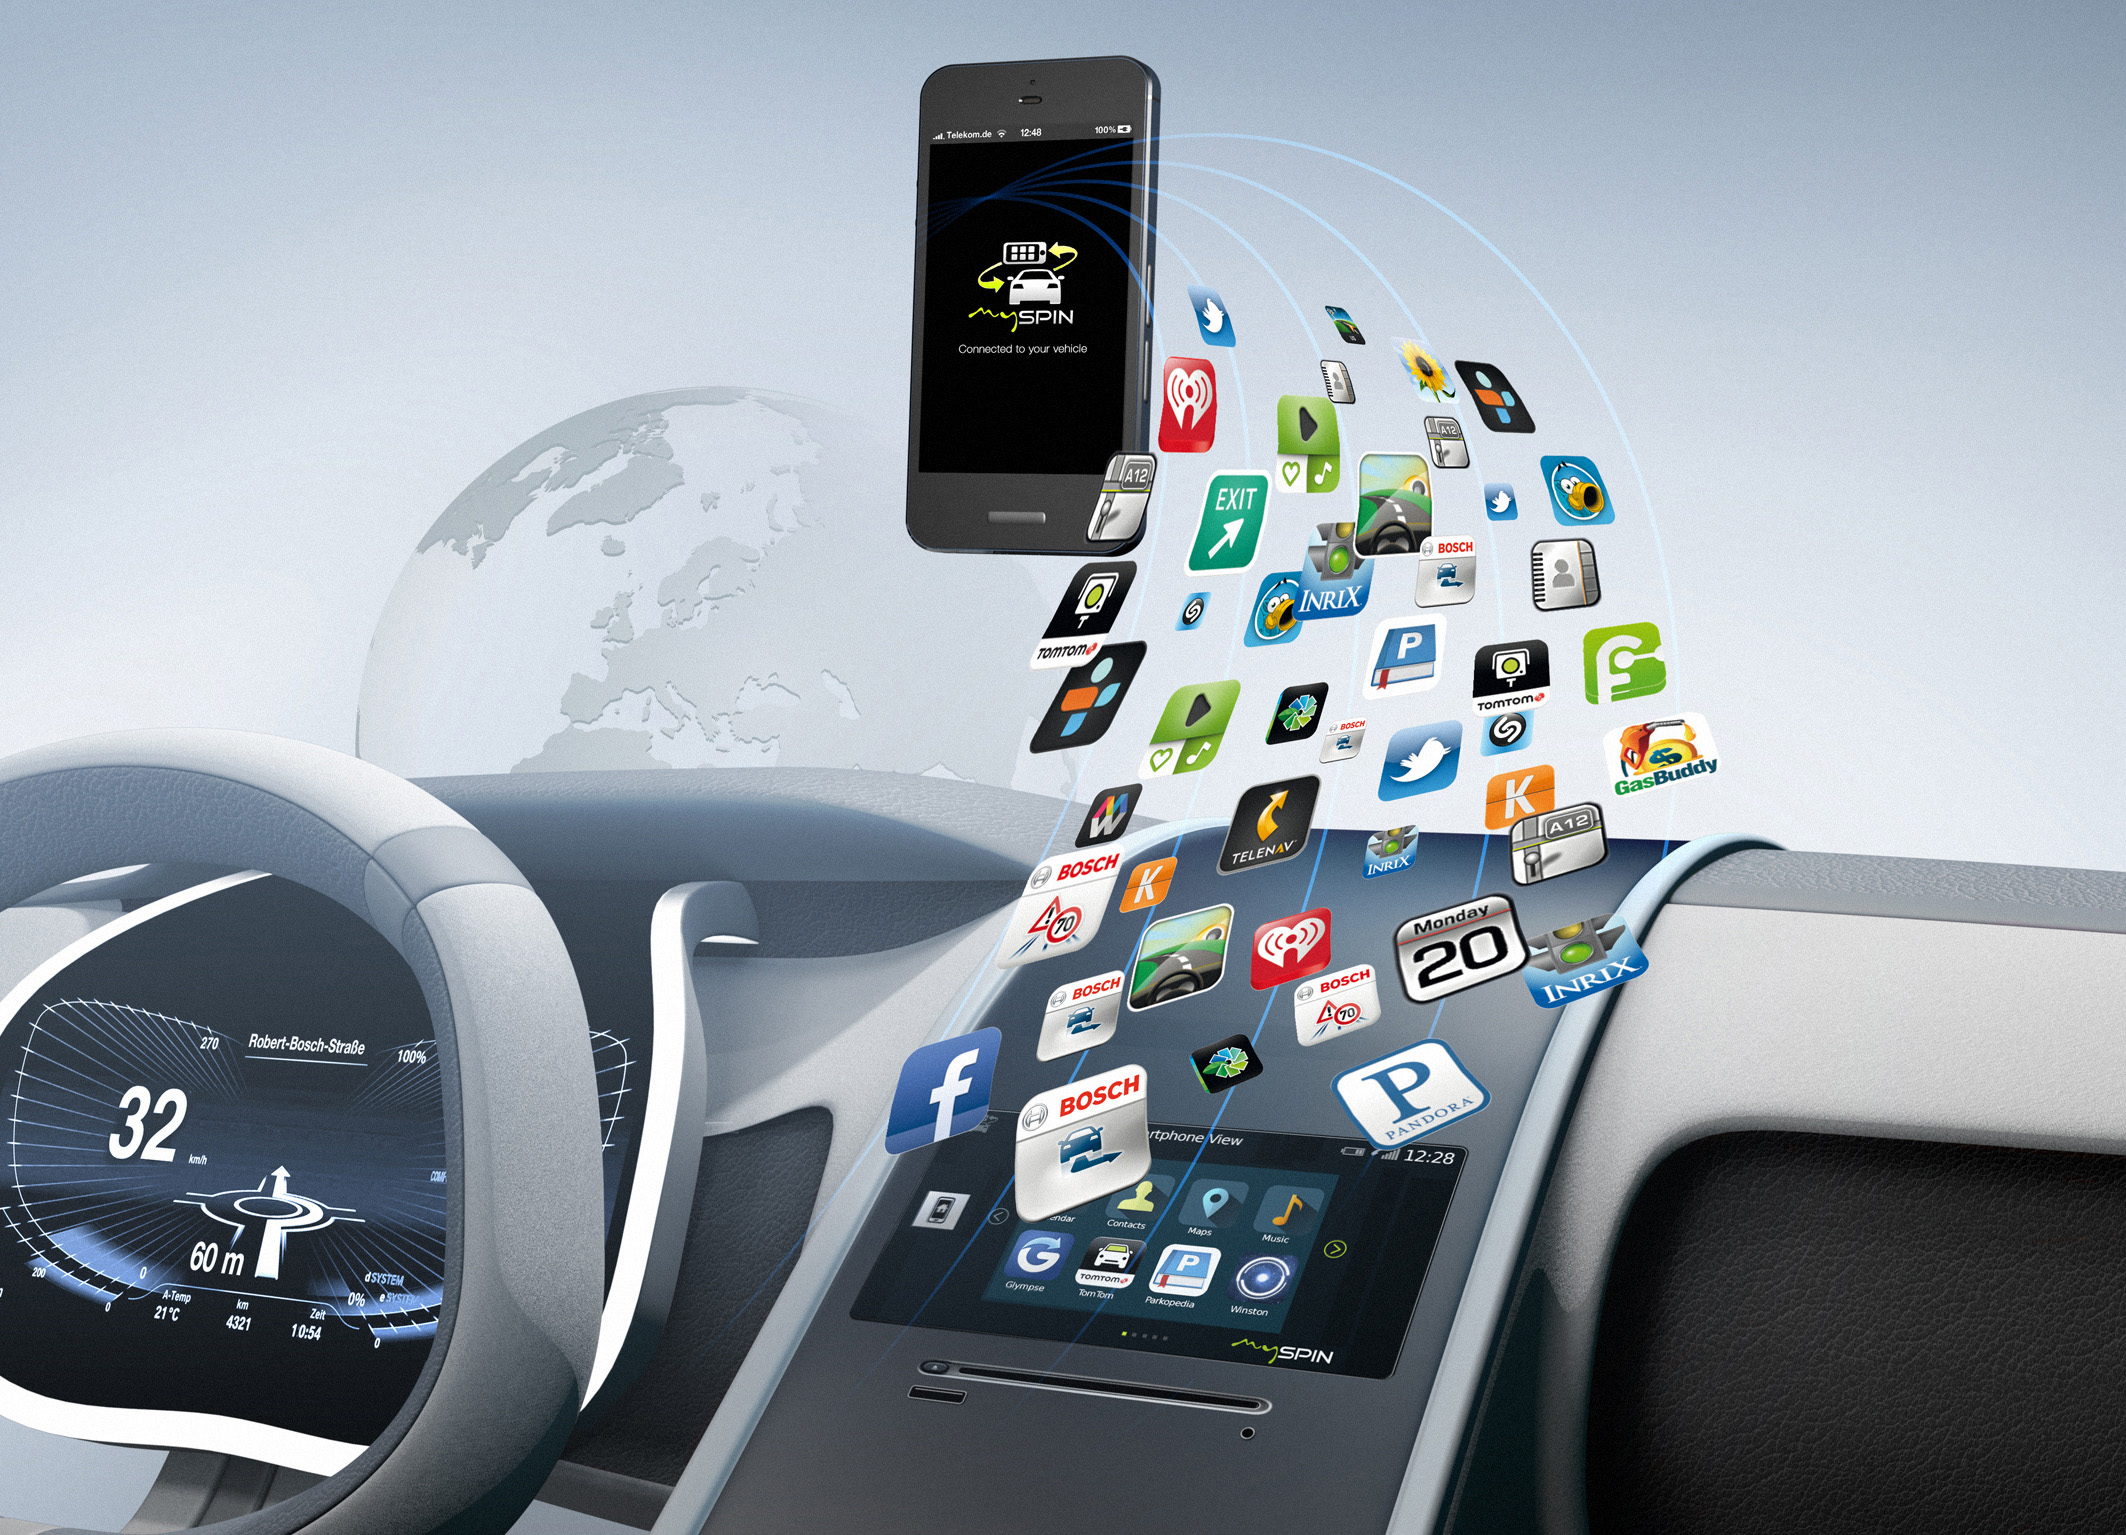 Автомобили становятся активной частью интернета – Bosch создает необходимые оборудование, программное обеспечение и сервисные решения